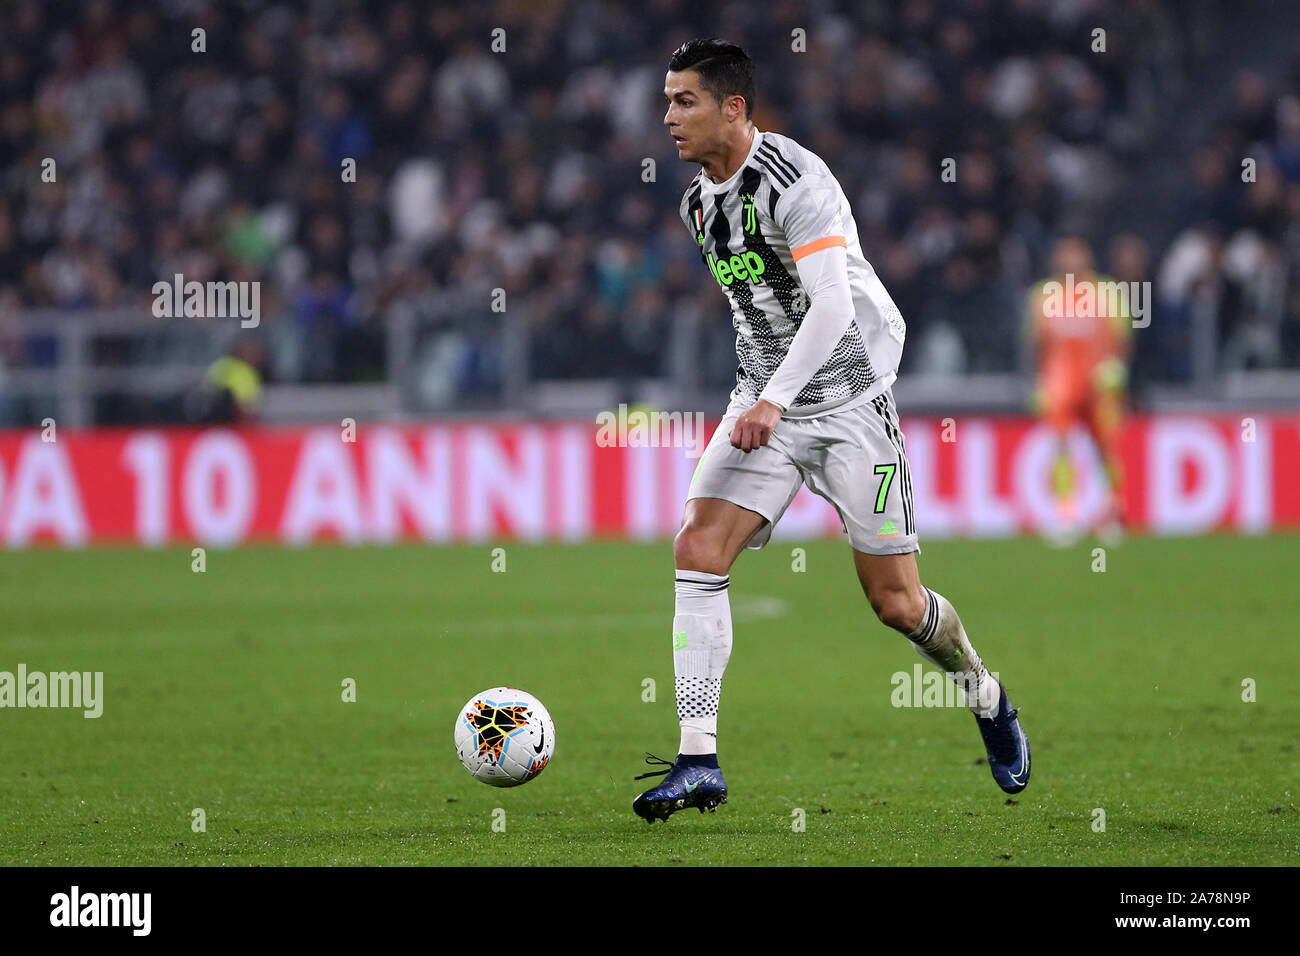 Torino, Italia. Il 30 ottobre 2019. Campionato italiano A. Juventus FC vs Genoa CFC. Cristiano Ronaldo della Juventus FC. Foto Stock